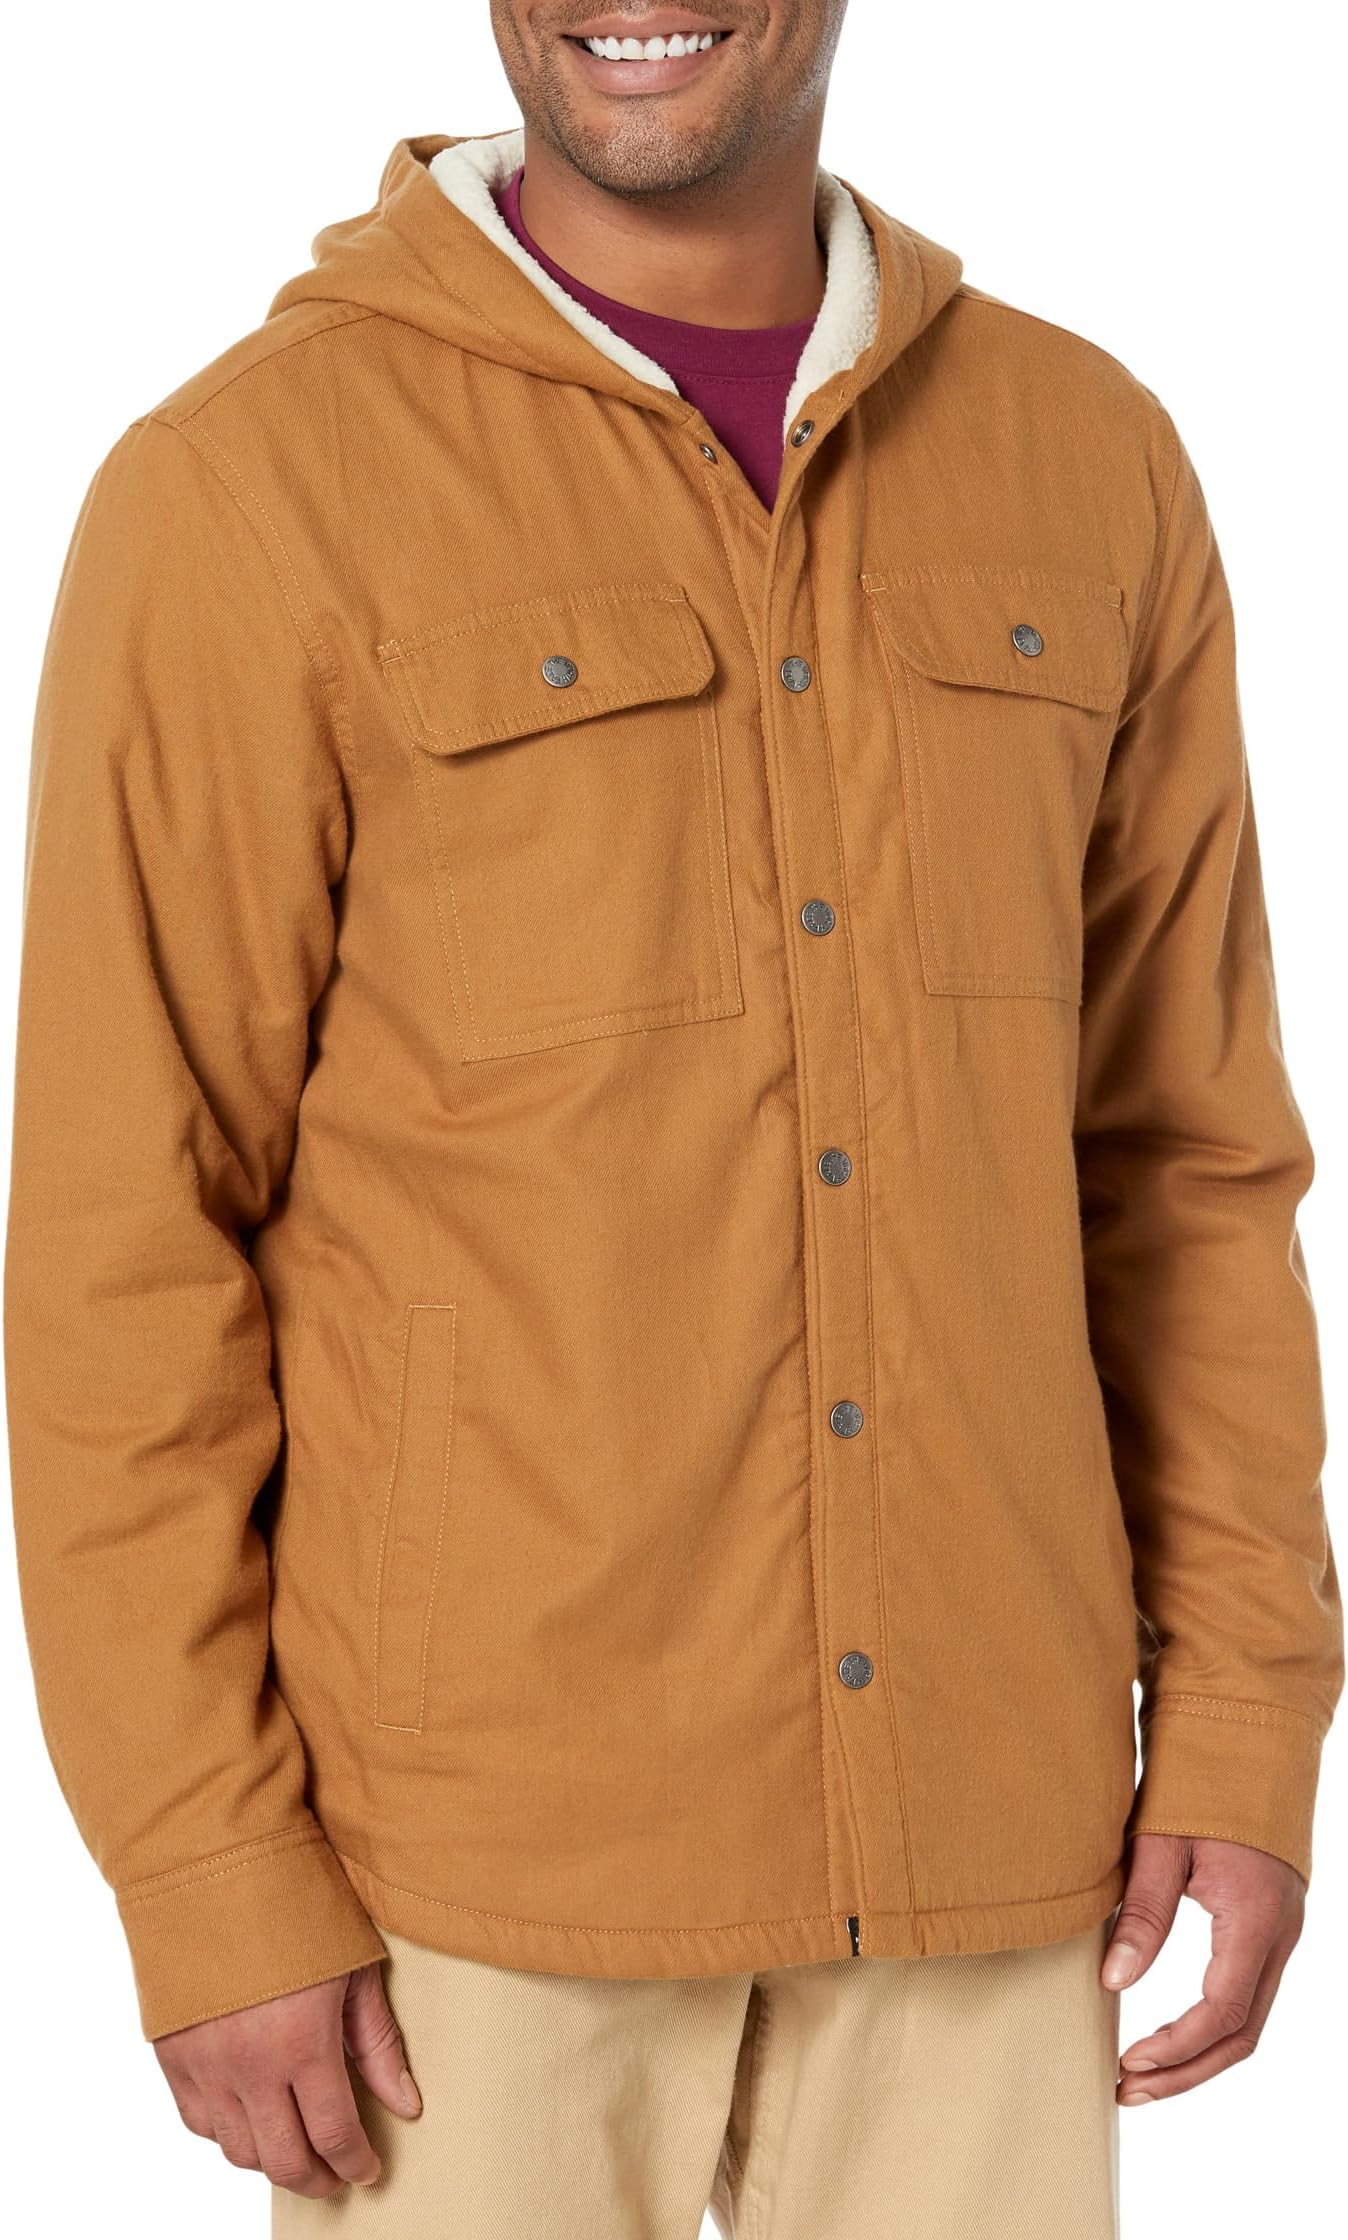 Рубашка в стиле Кэмпшир с капюшоном The North Face, цвет Utility Brown пуховик aconcagua hoodie the north face цвет utility brown